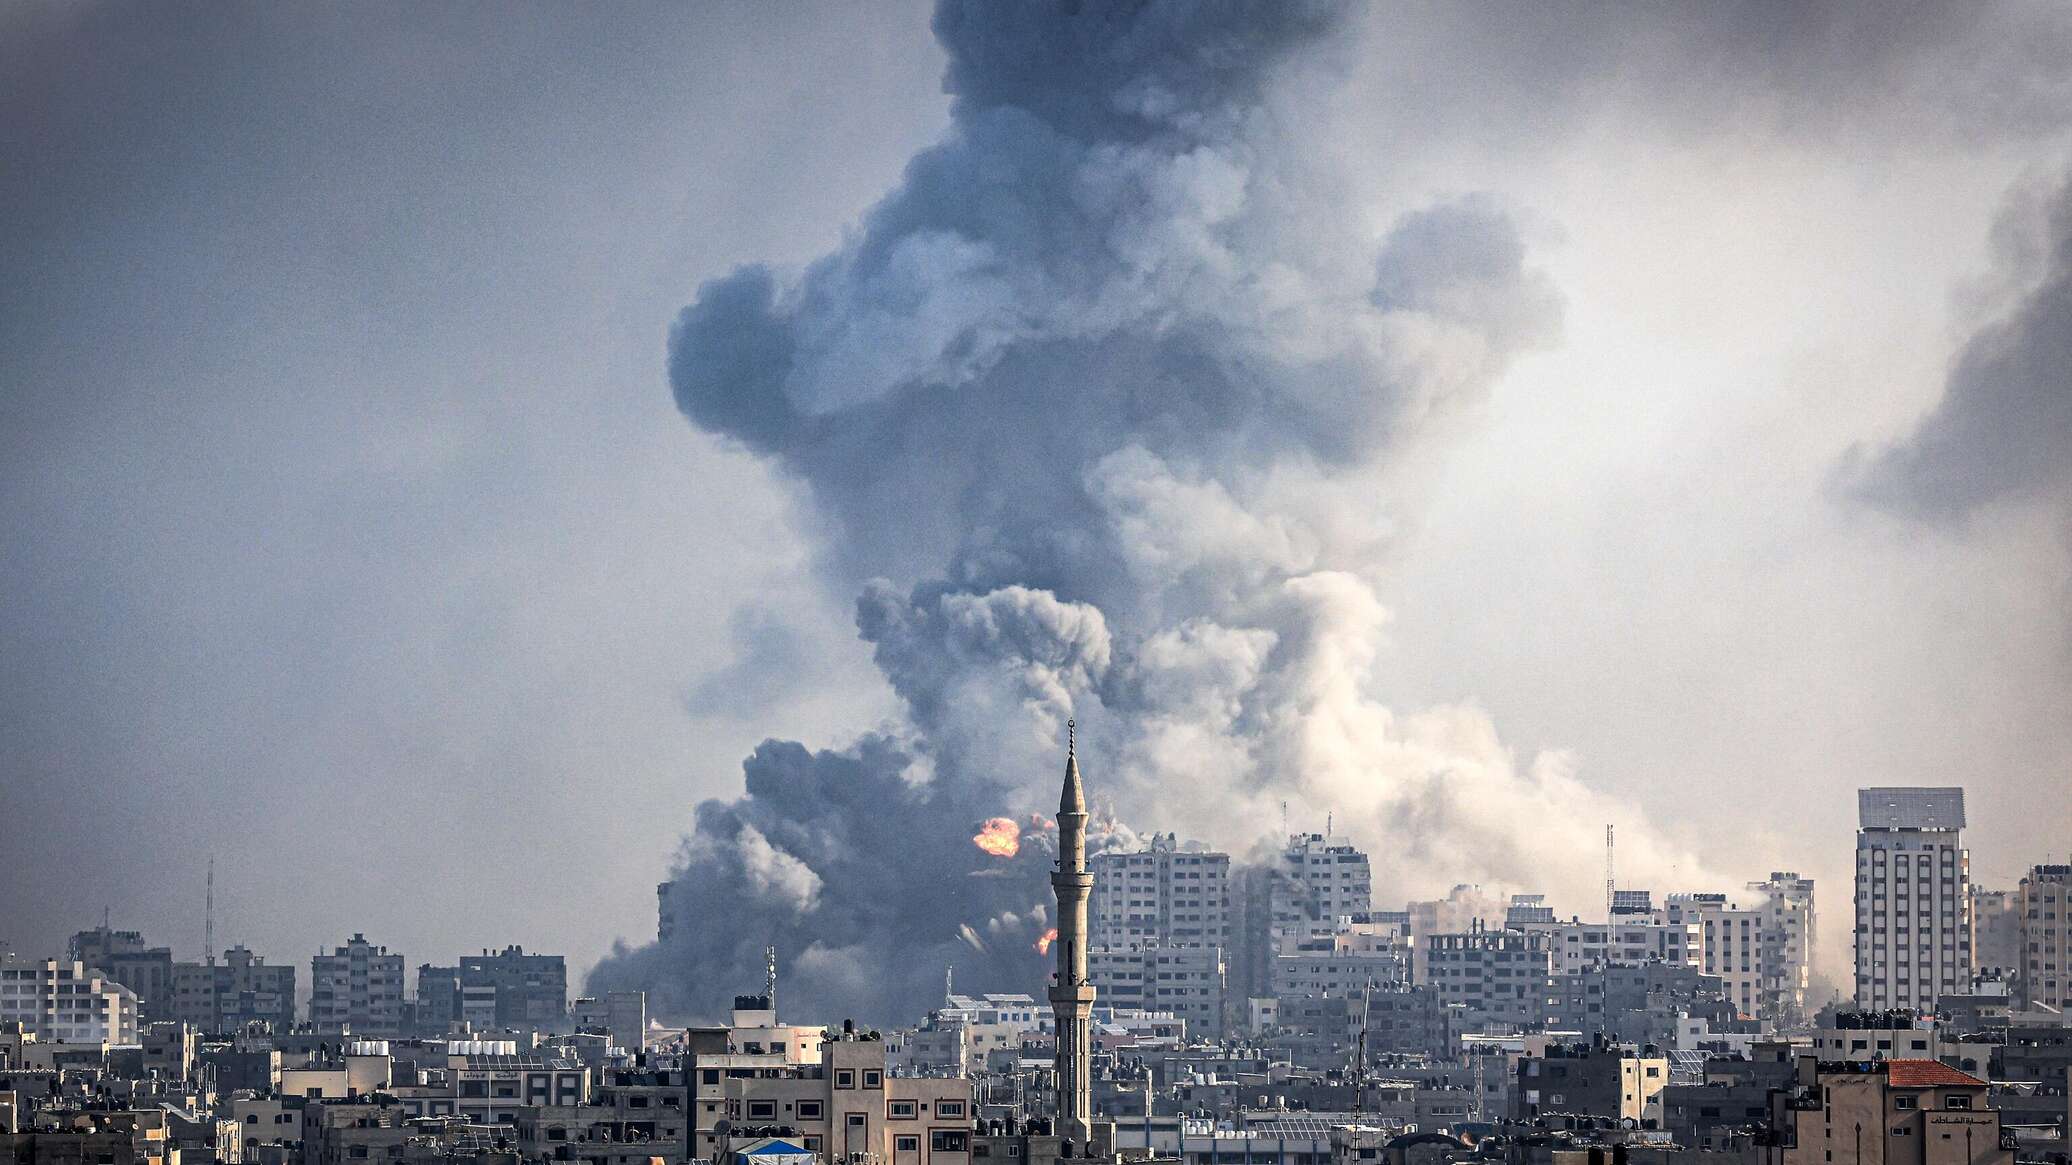 "حماس" تعلن مقتل 13 أسيرا بينهم أجانب في القصف الإسرائيلي